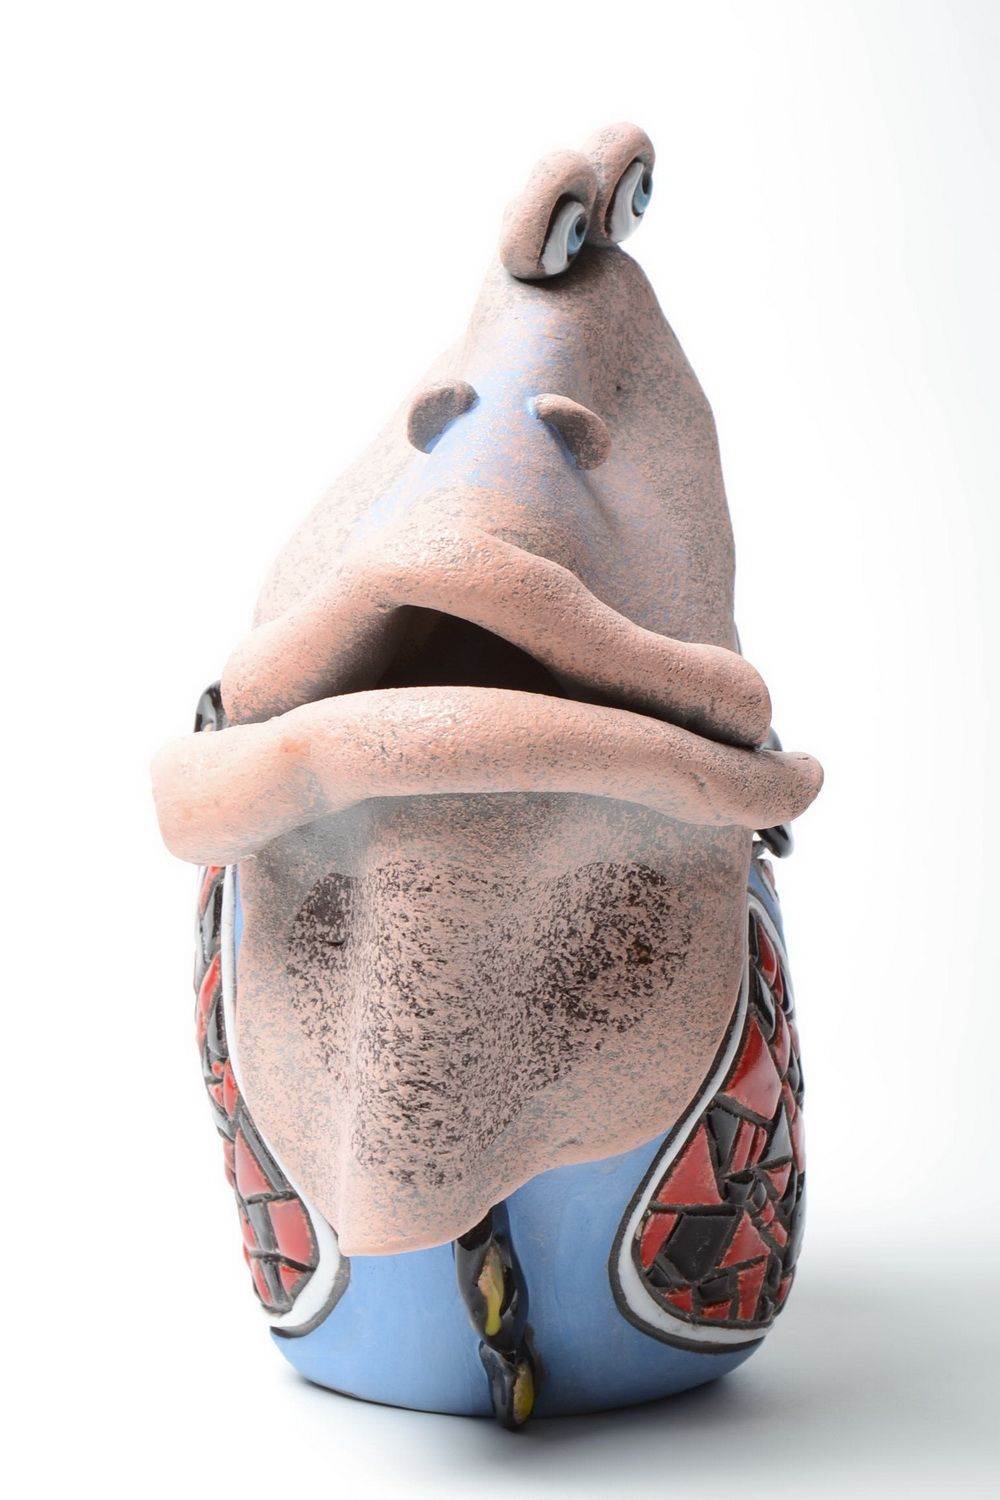 Оригинальная ваза ручной работы из глины расписанная пигментами в виде рыбы фото 2